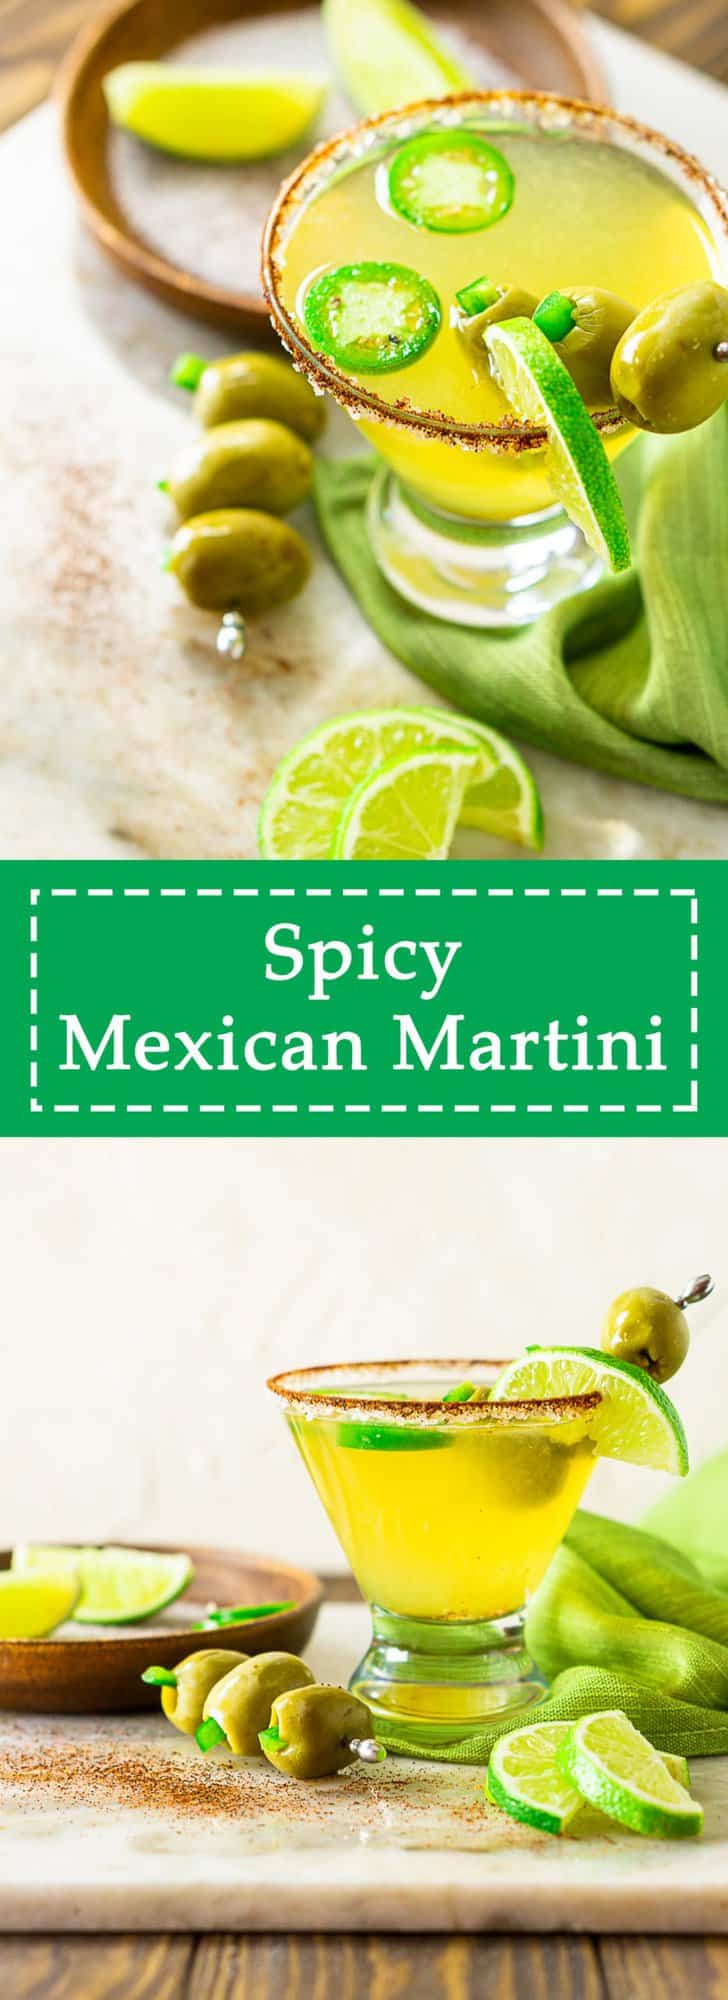 Spicy Mexican Martini - Burrata and Bubbles